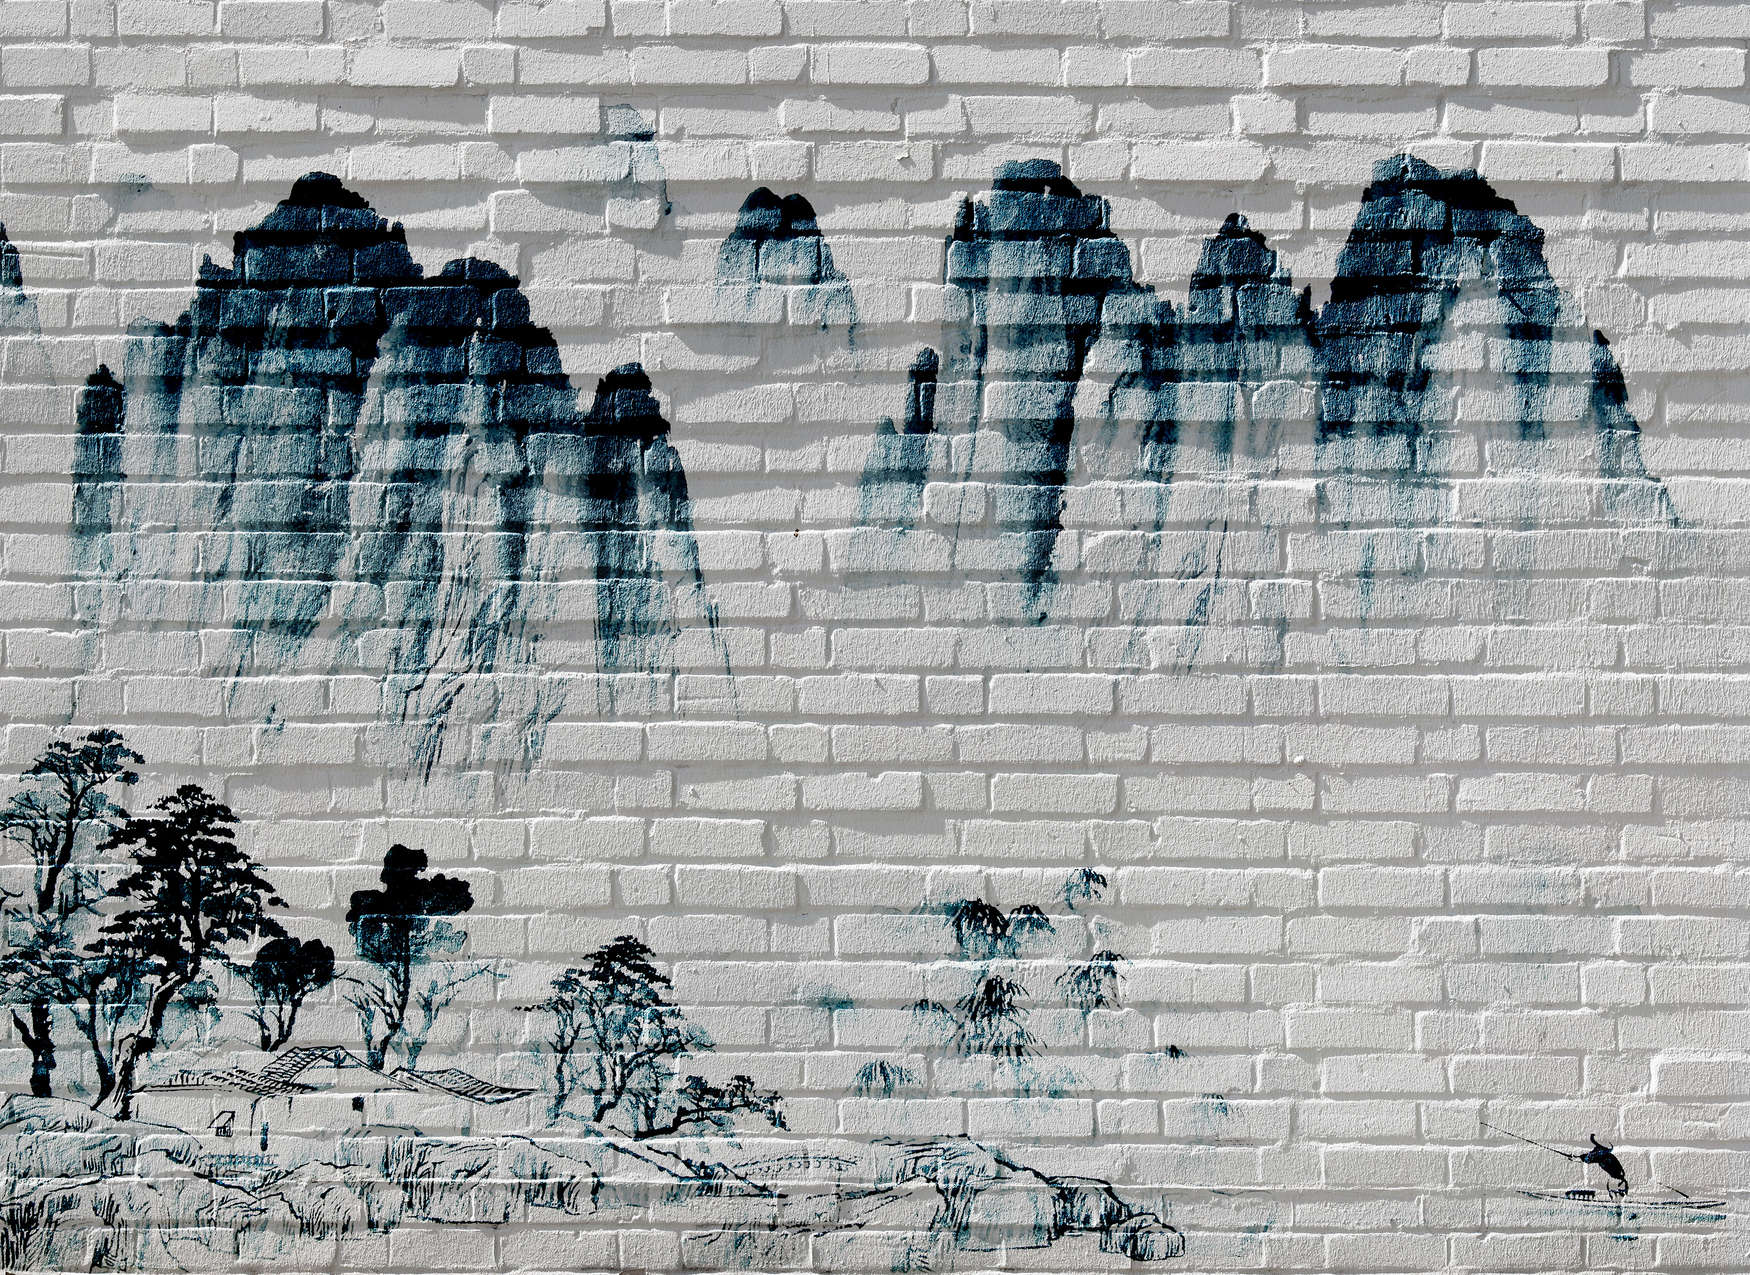             Photo wallpaper Mountains on Brick Wall - Blue, White
        